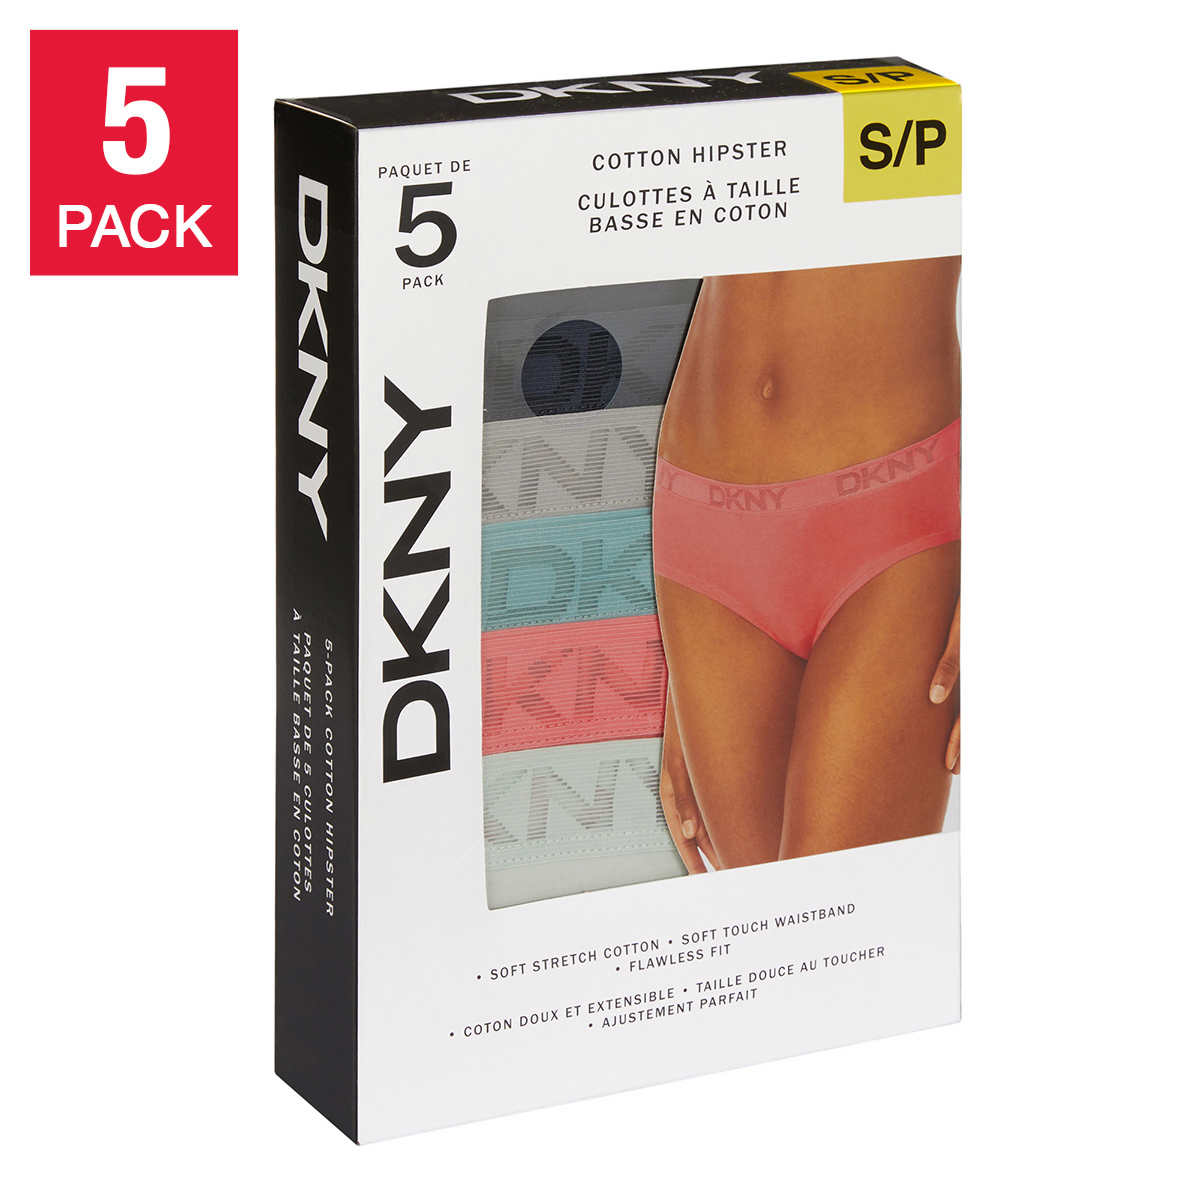 Underwear suggestion: Litex – Enhancement Push up pack